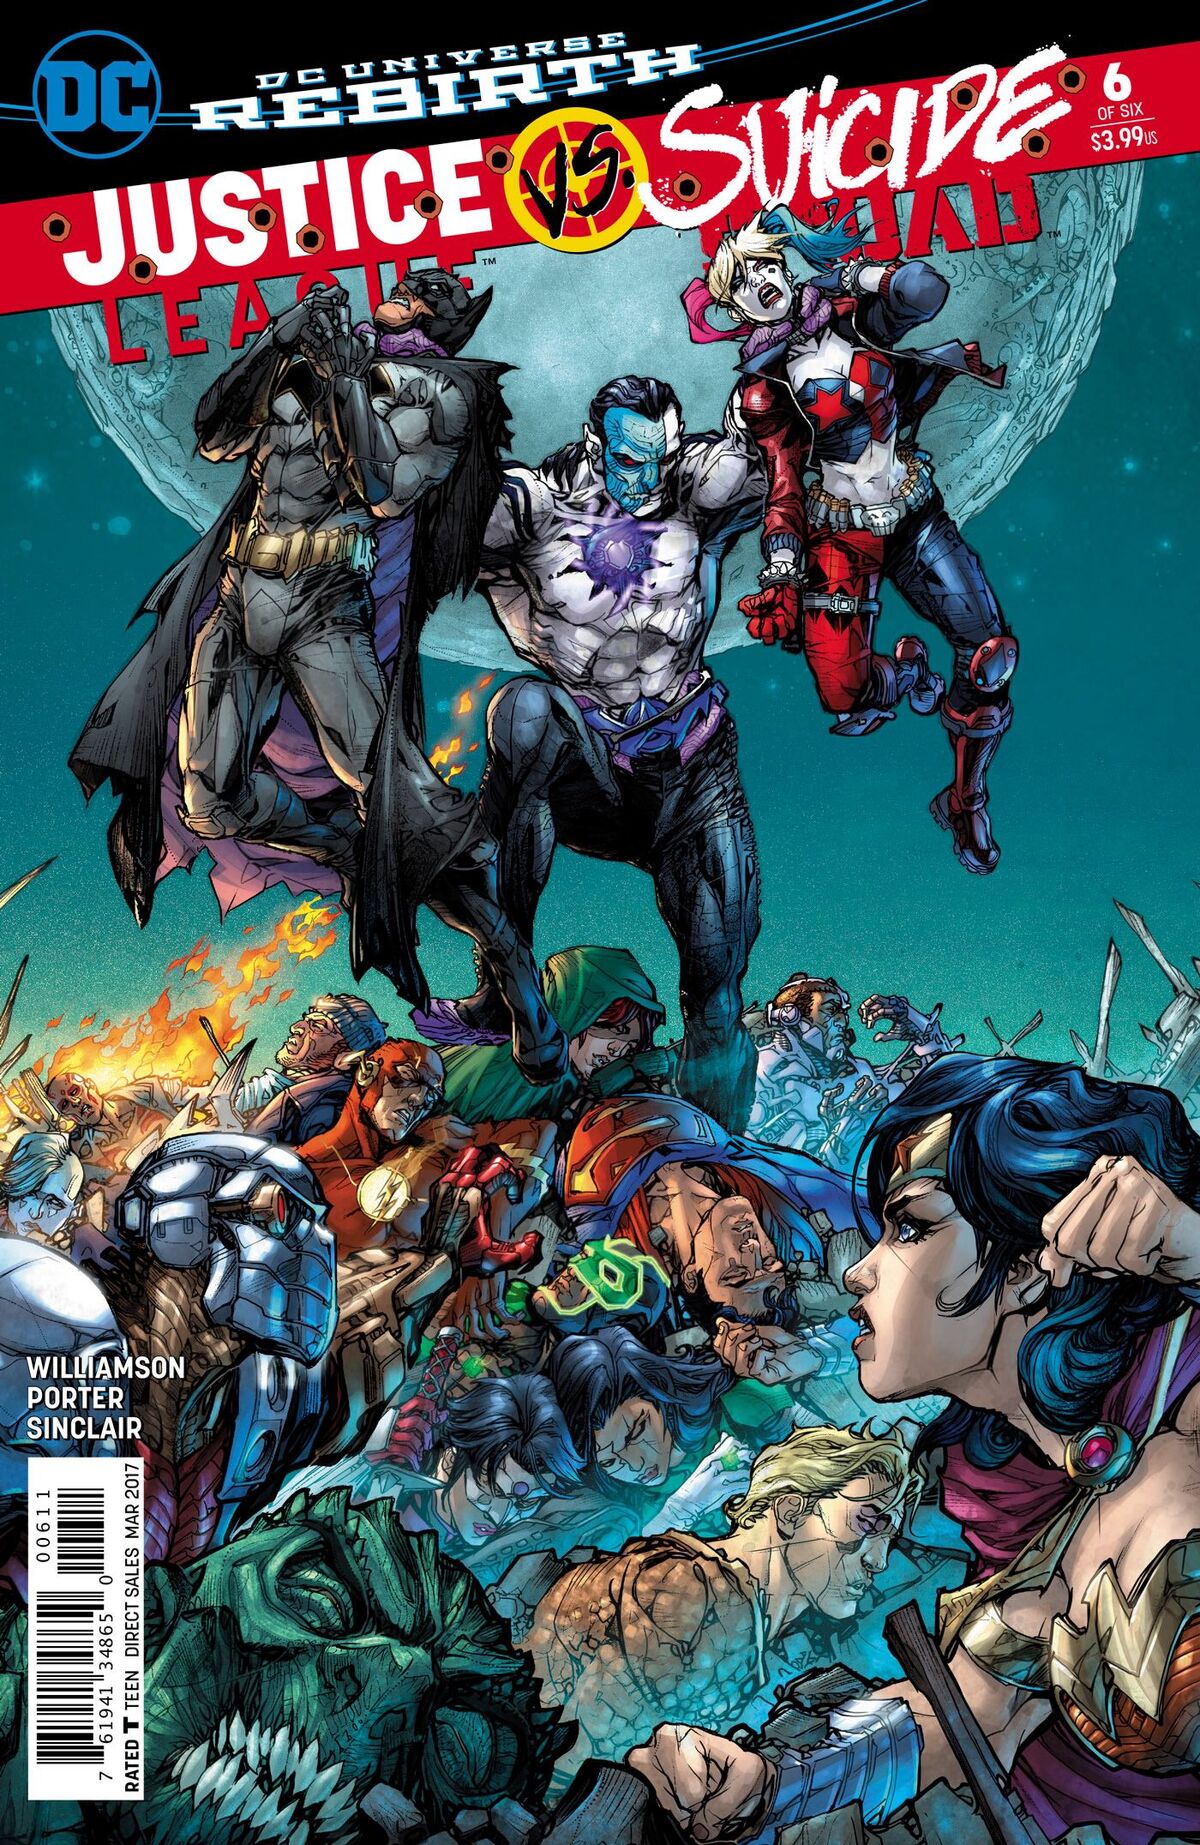 Justice League vs Suicide Squad DC Rebirth issue 6